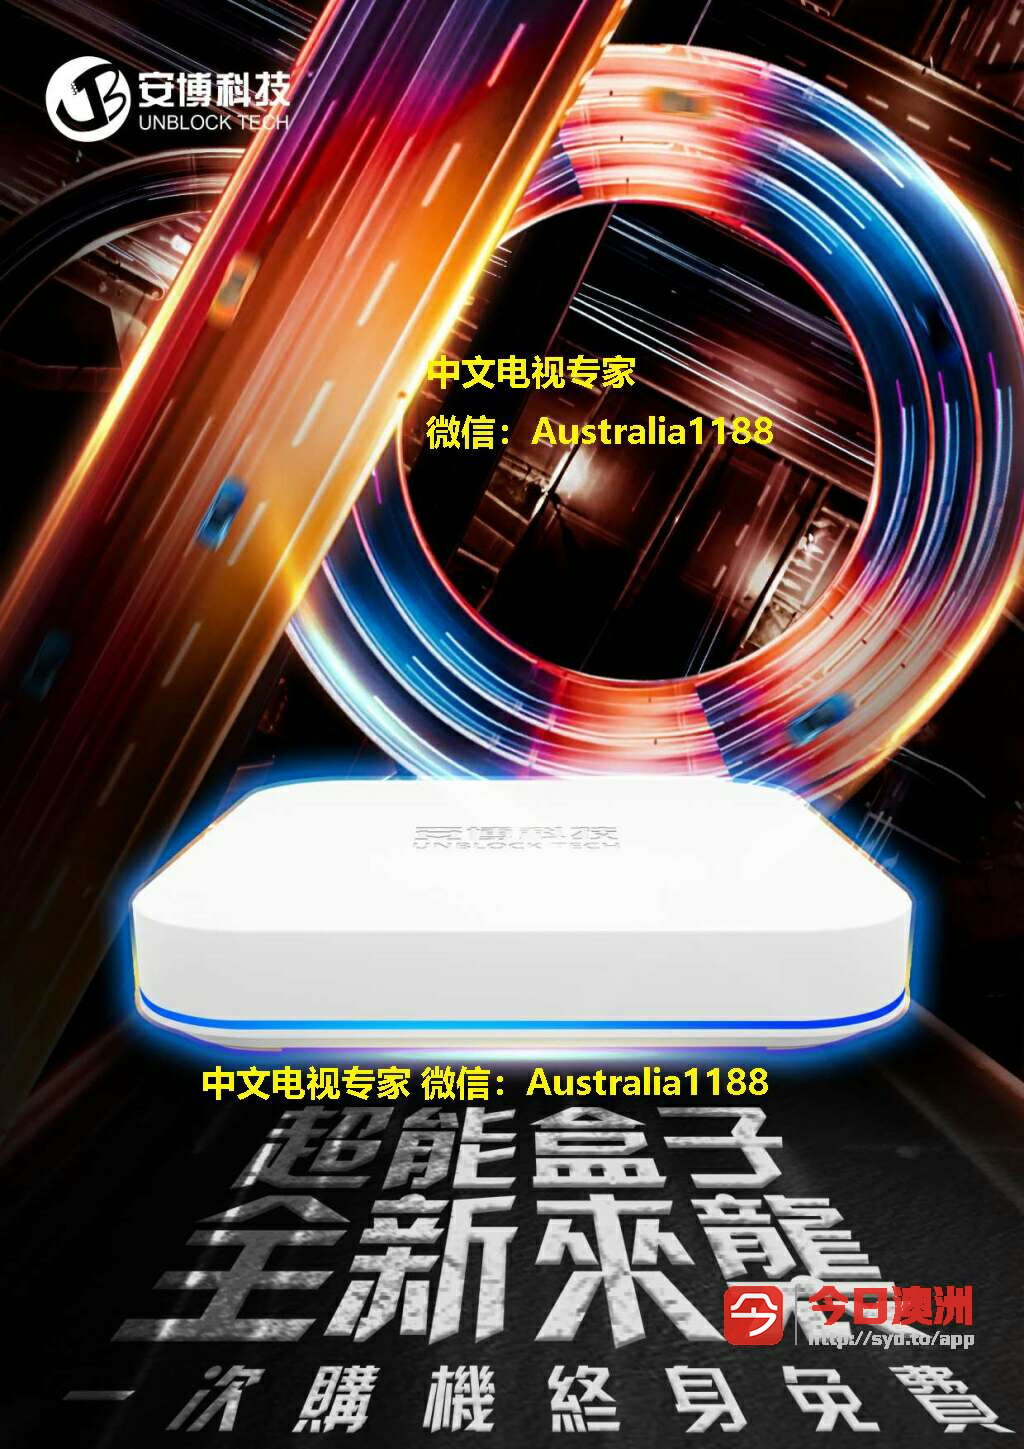 安博澳洲中文电视盒官方授权代理终身免费看大陆港澳台卫视直播神器小米盒子